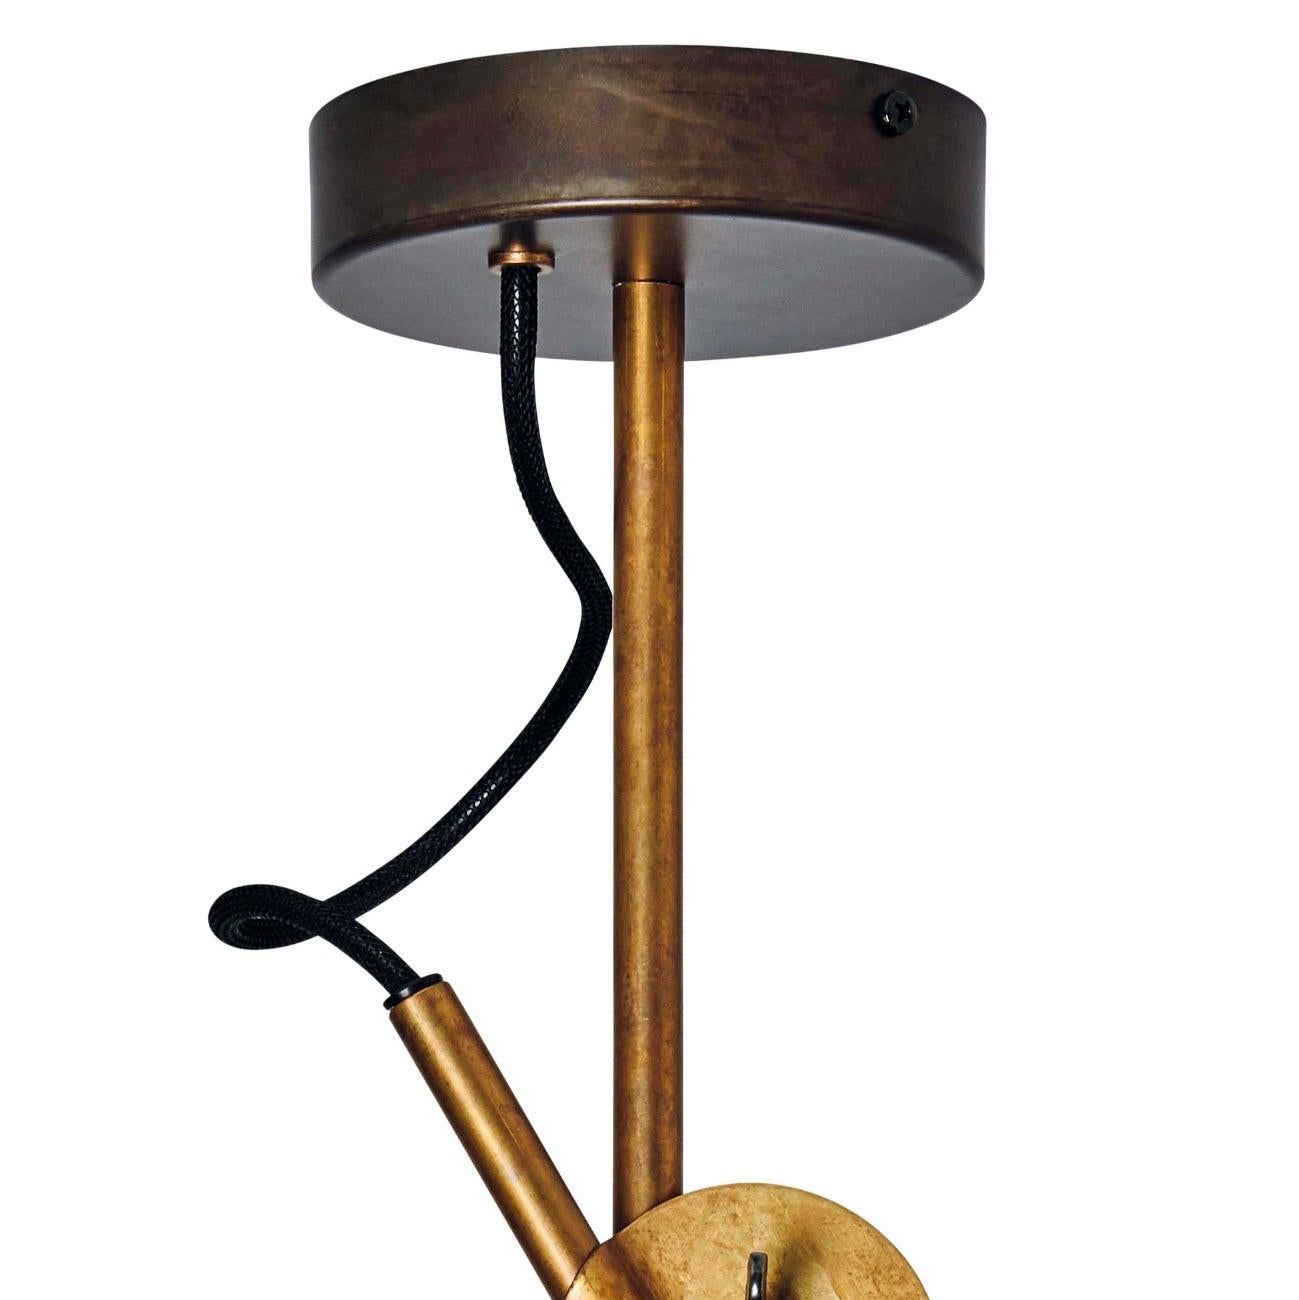 Johan Carpner Stav Spot 2 Raw Brass Ceiling Lamp by Konsthantverk For Sale 2